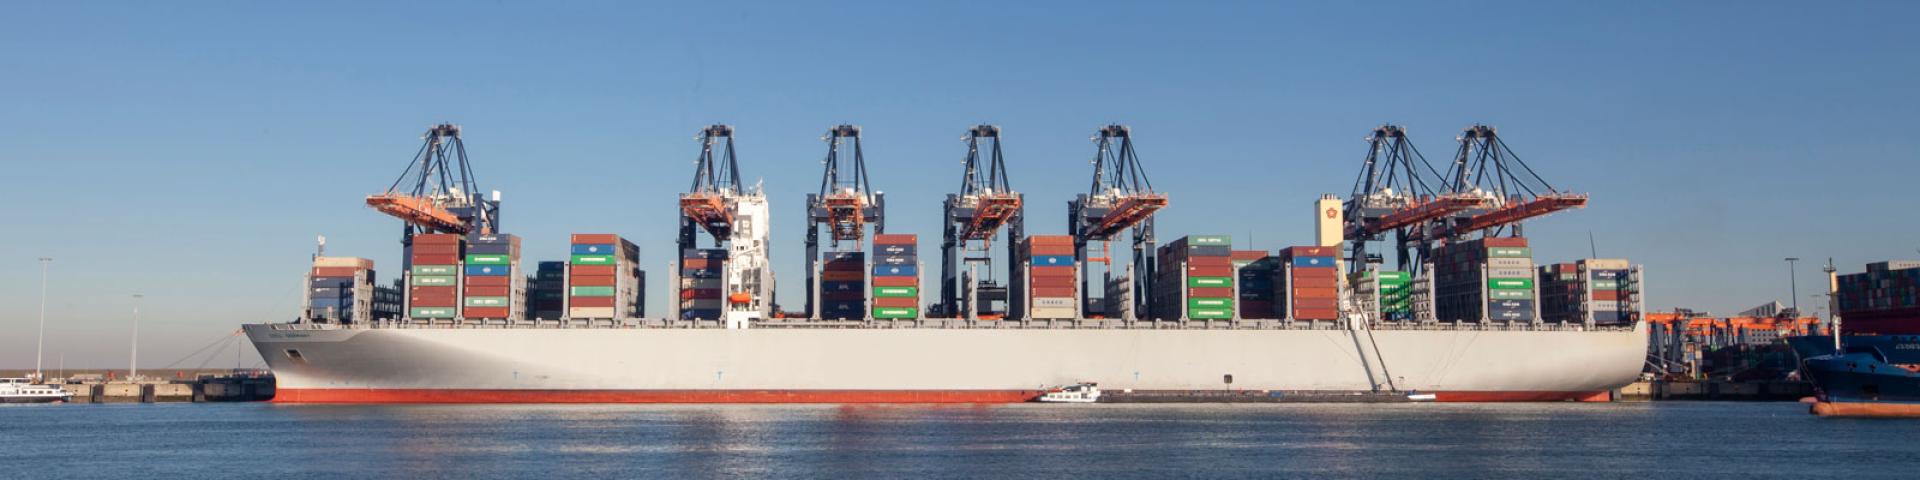 Foto van een containerschip in de Rotterdamse haven.